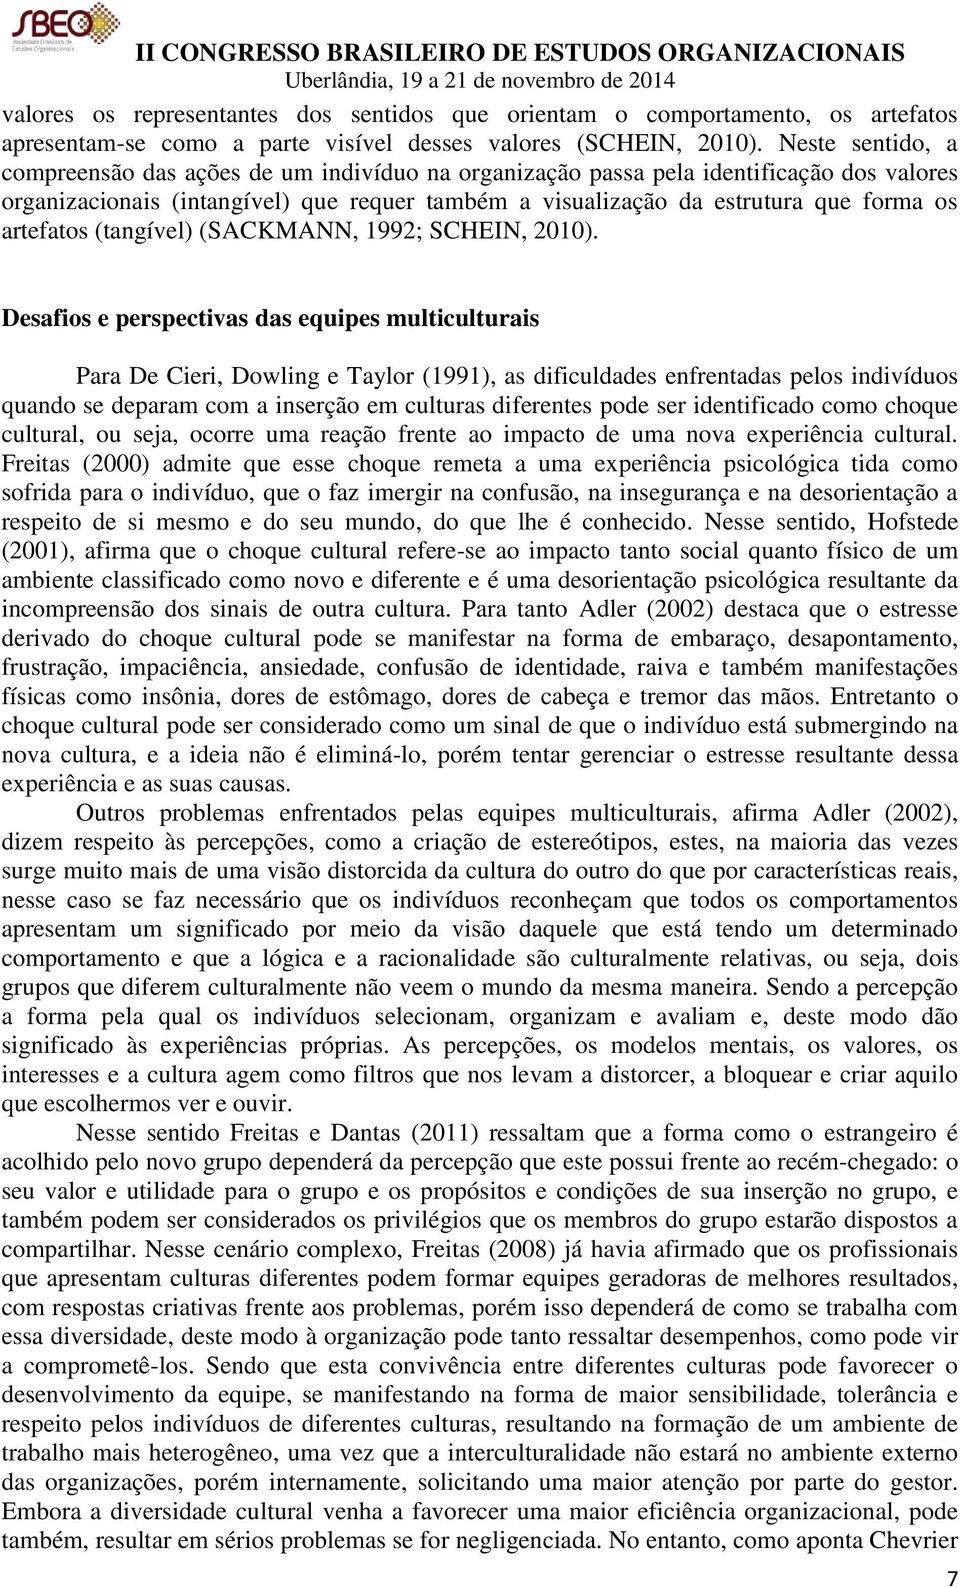 artefatos (tangível) (SACKMANN, 1992; SCHEIN, 2010).